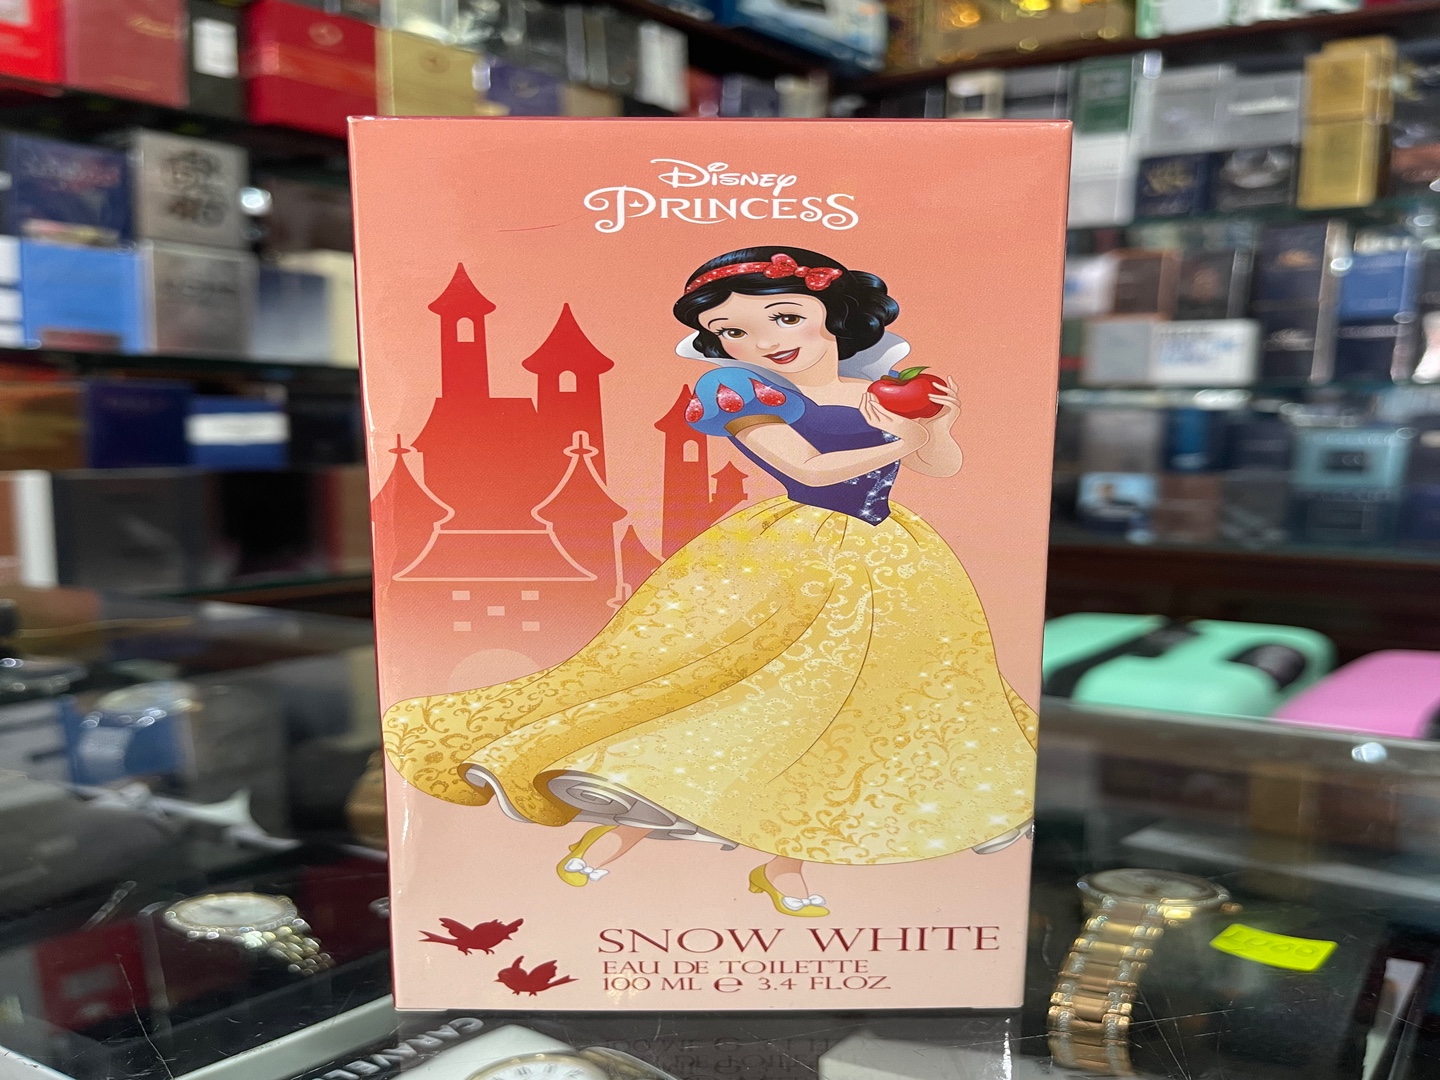 accesorios - Perfume Disney Princess “Blanca Nieves” 3.4OZ - AL POR MAYOR Y AL DETALLE